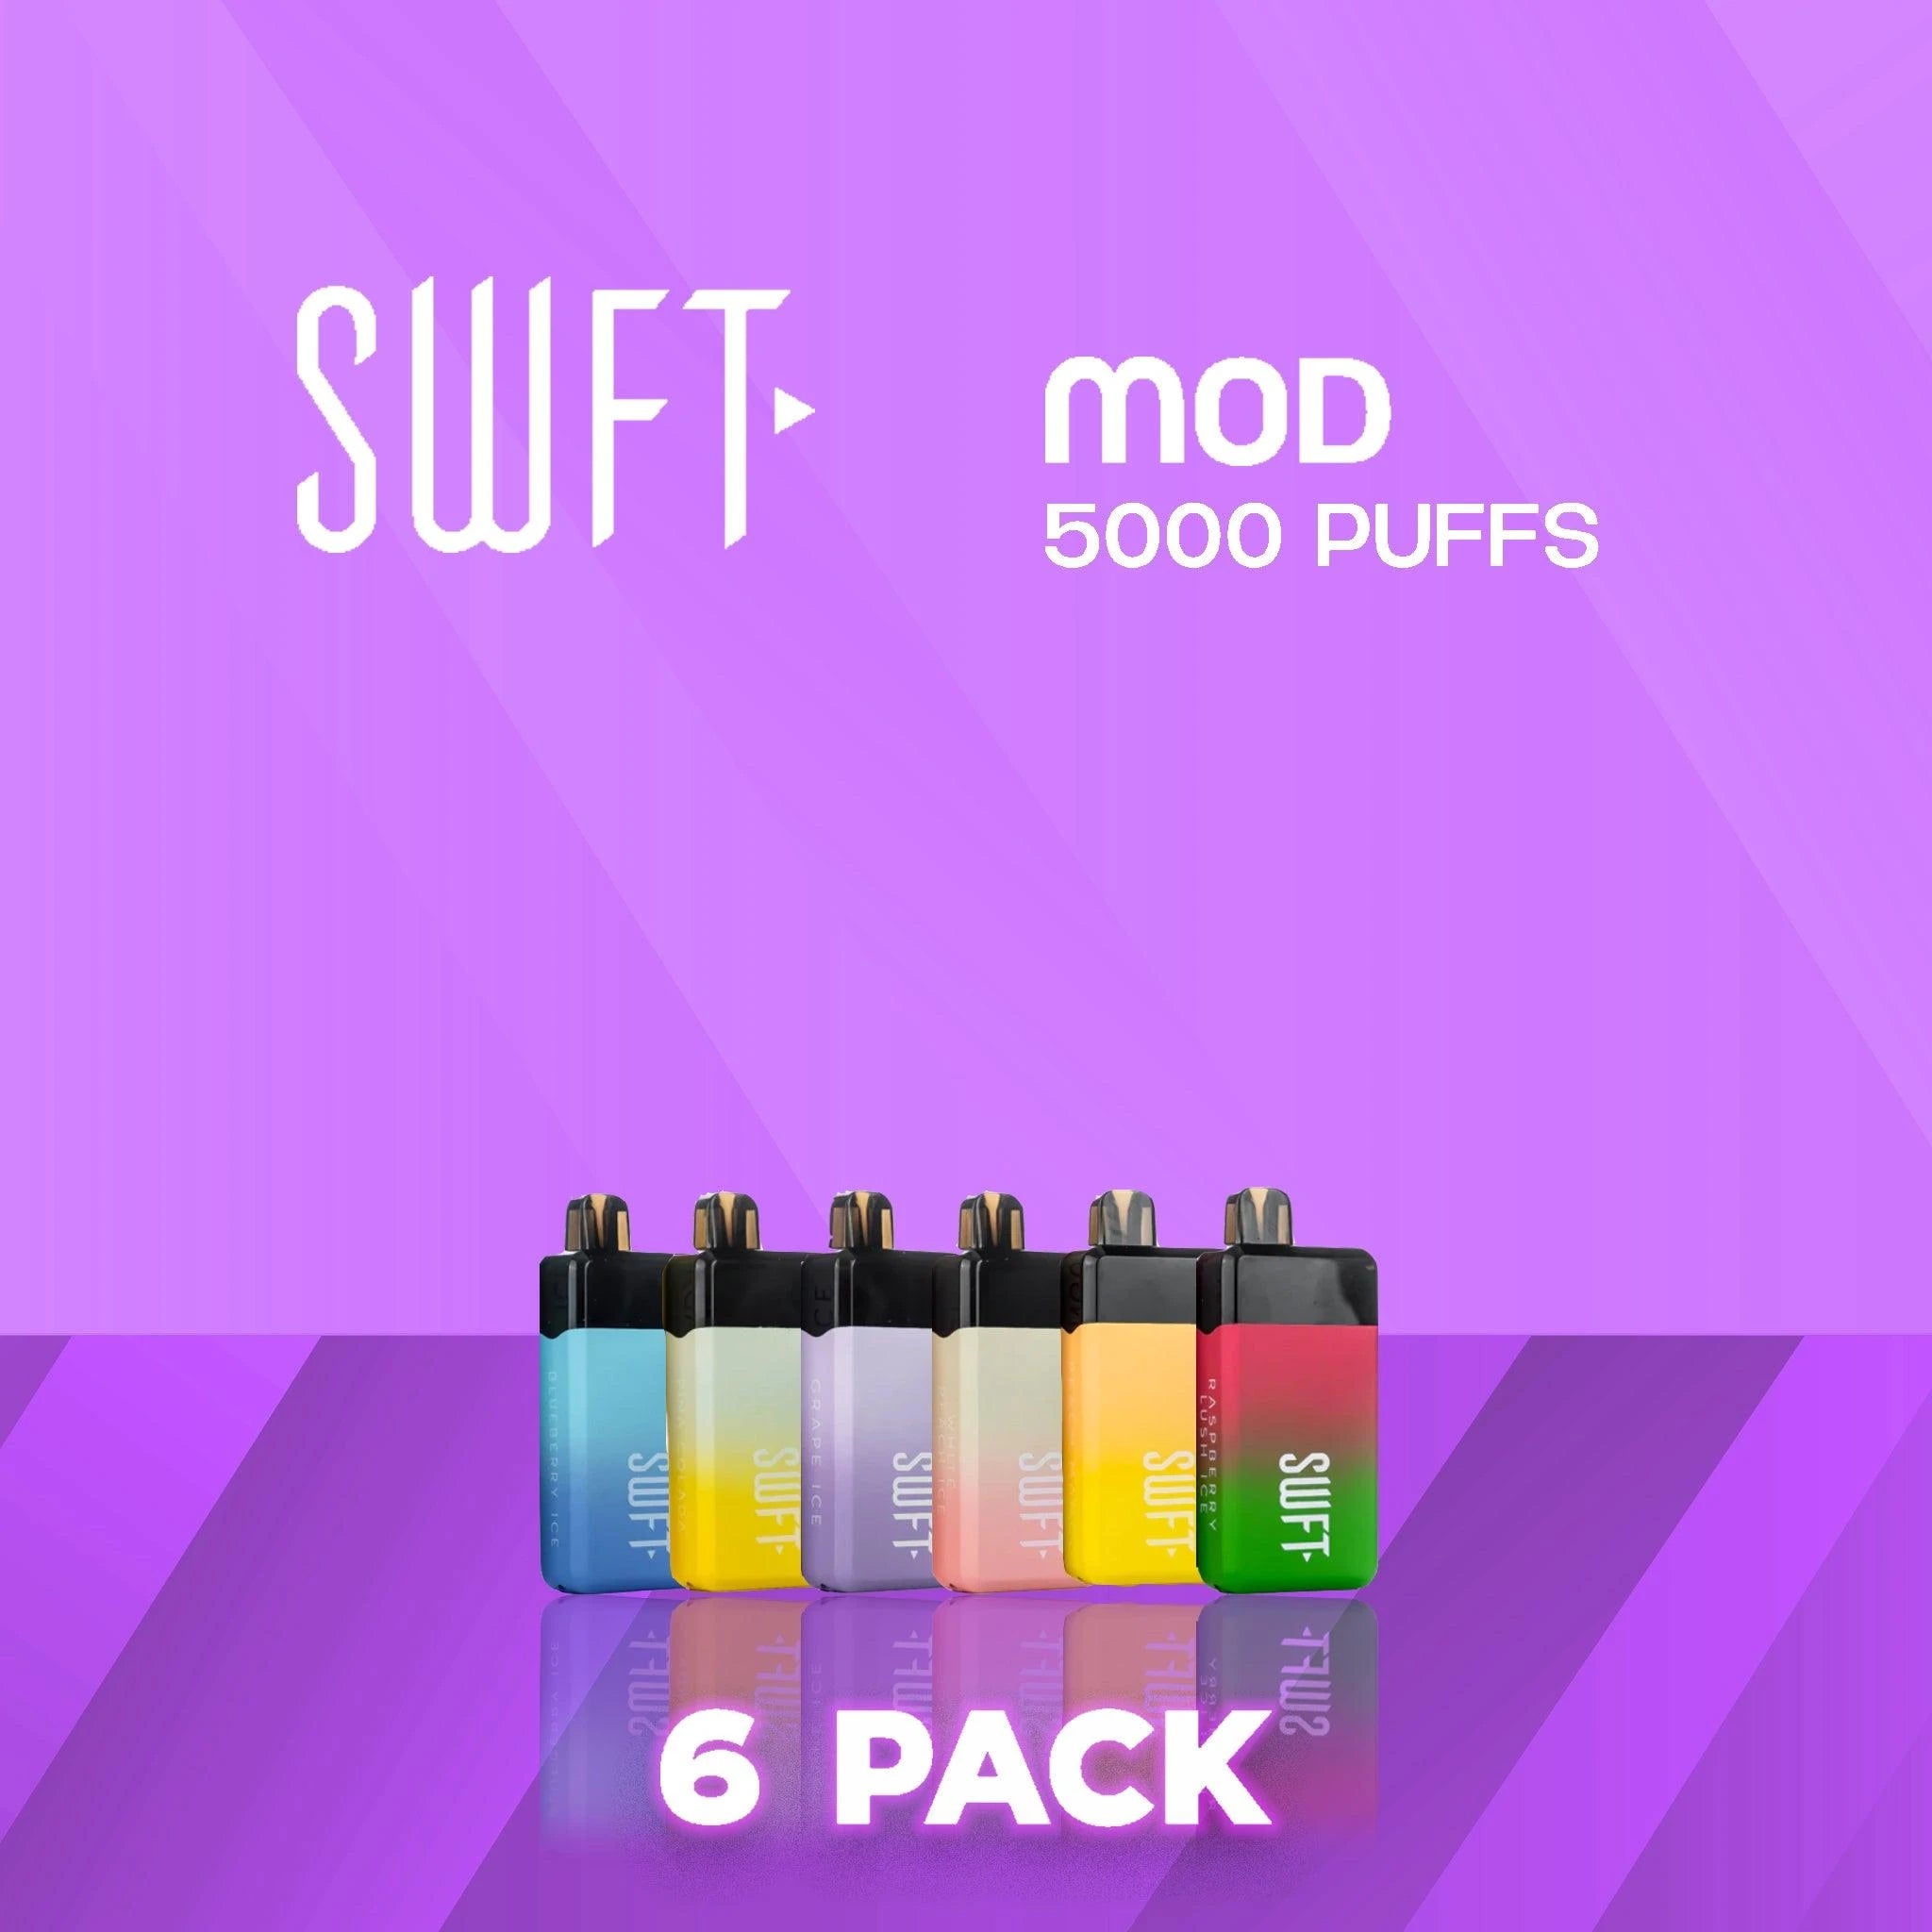 SWFT MOD Disposable Vape - 6 Pack